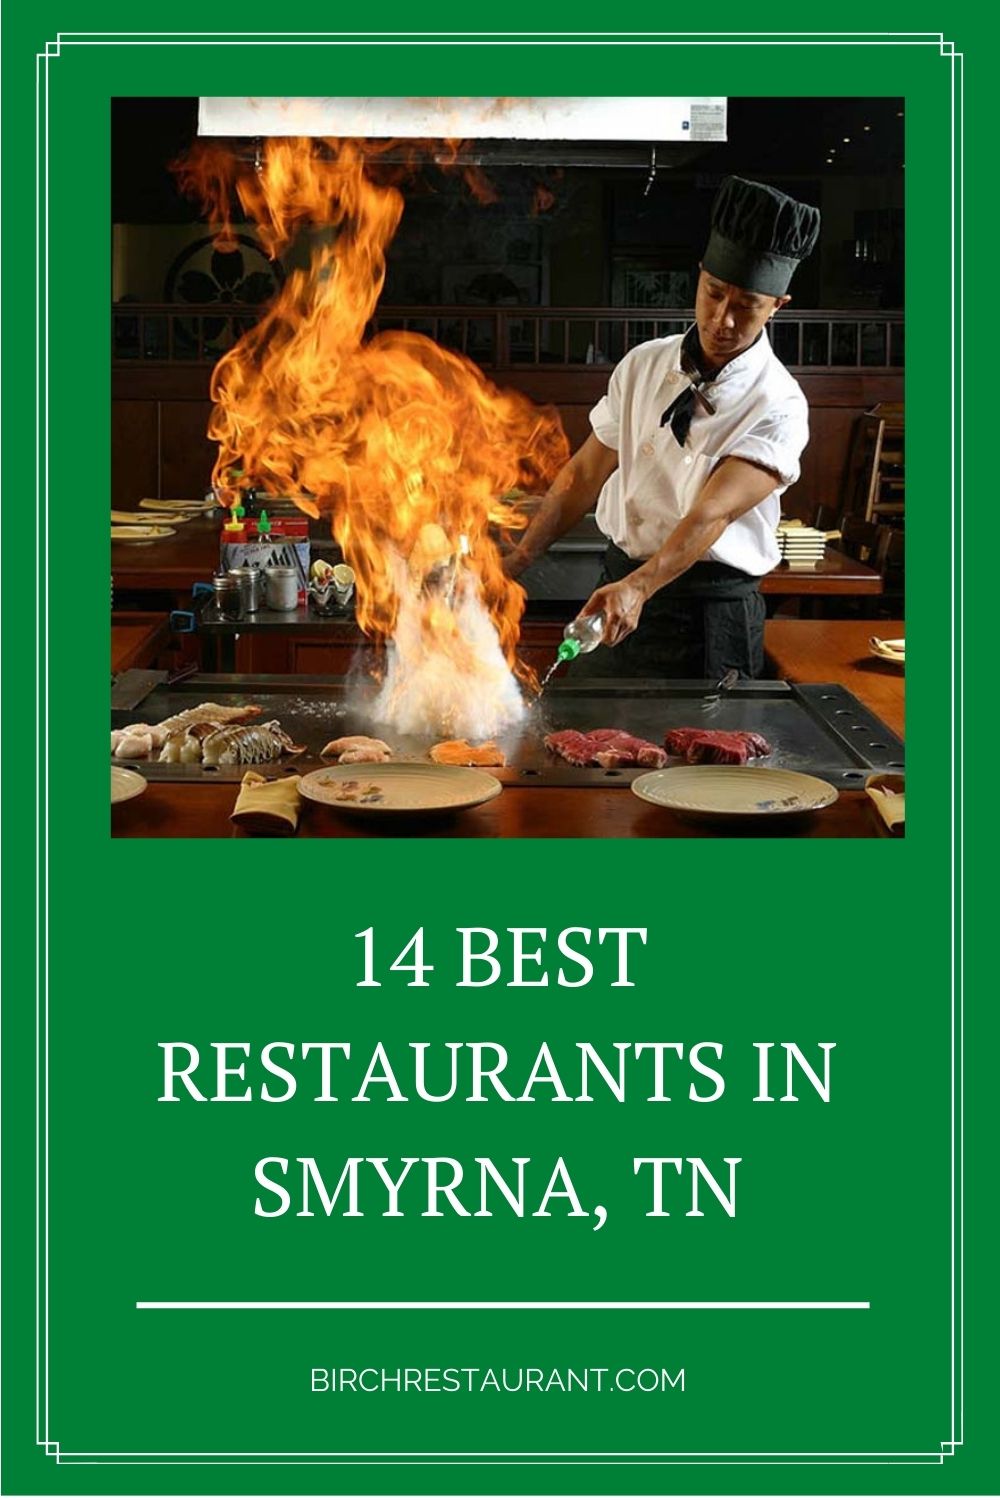 Best Restaurants in Smyrna